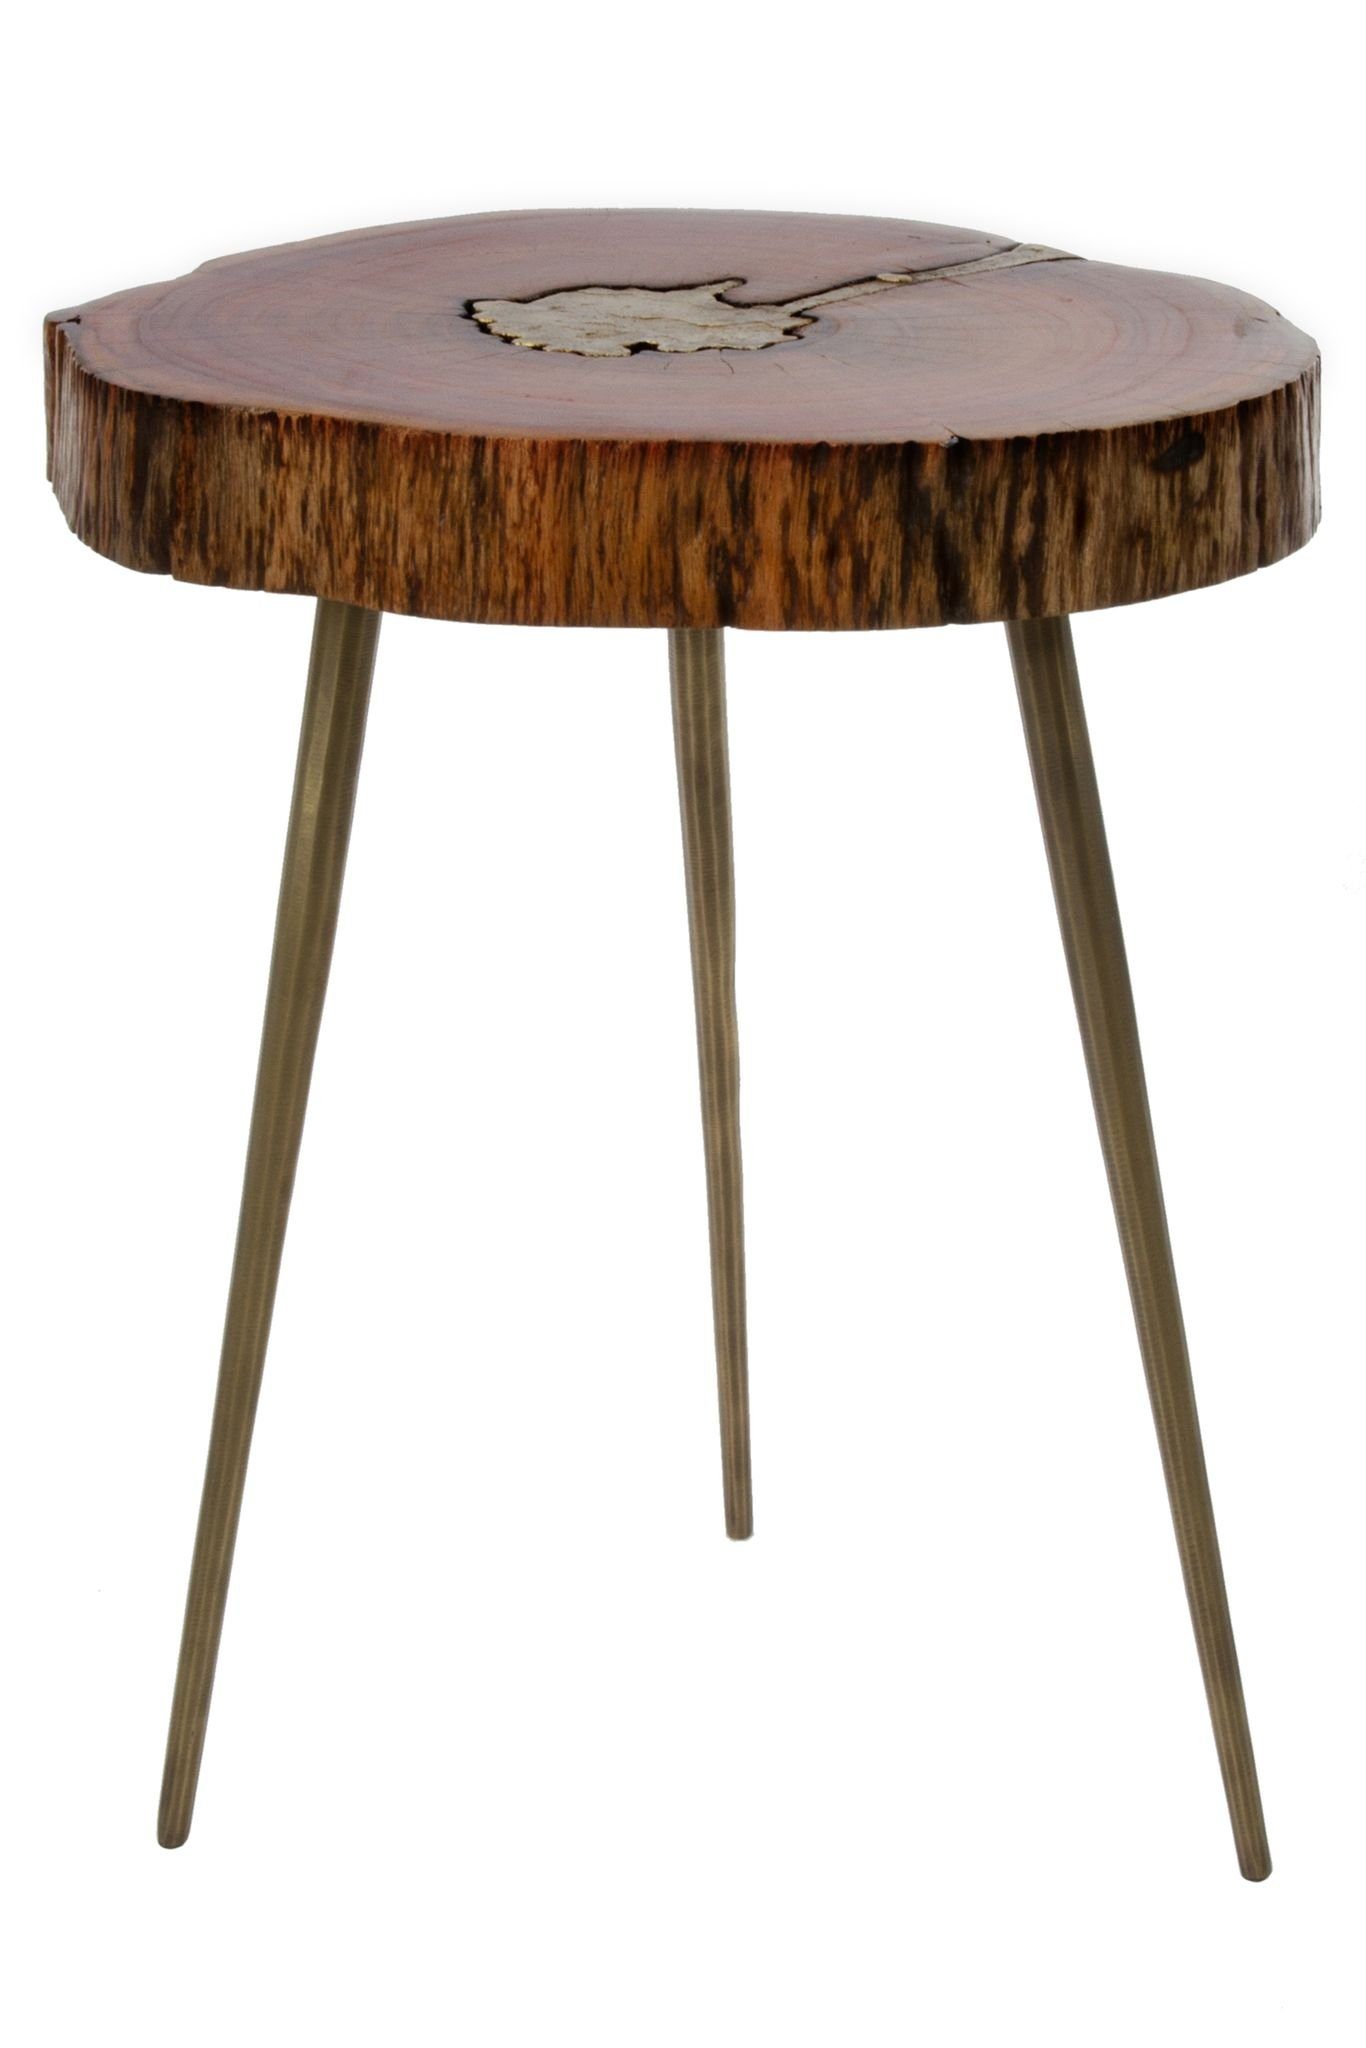 elbmöbel Couchtisch Beistelltisch mit Messingfüllung (FALSCH), Ablage: Beistelltisch 28x46x36 cm messing Holz rustikal | Couchtische